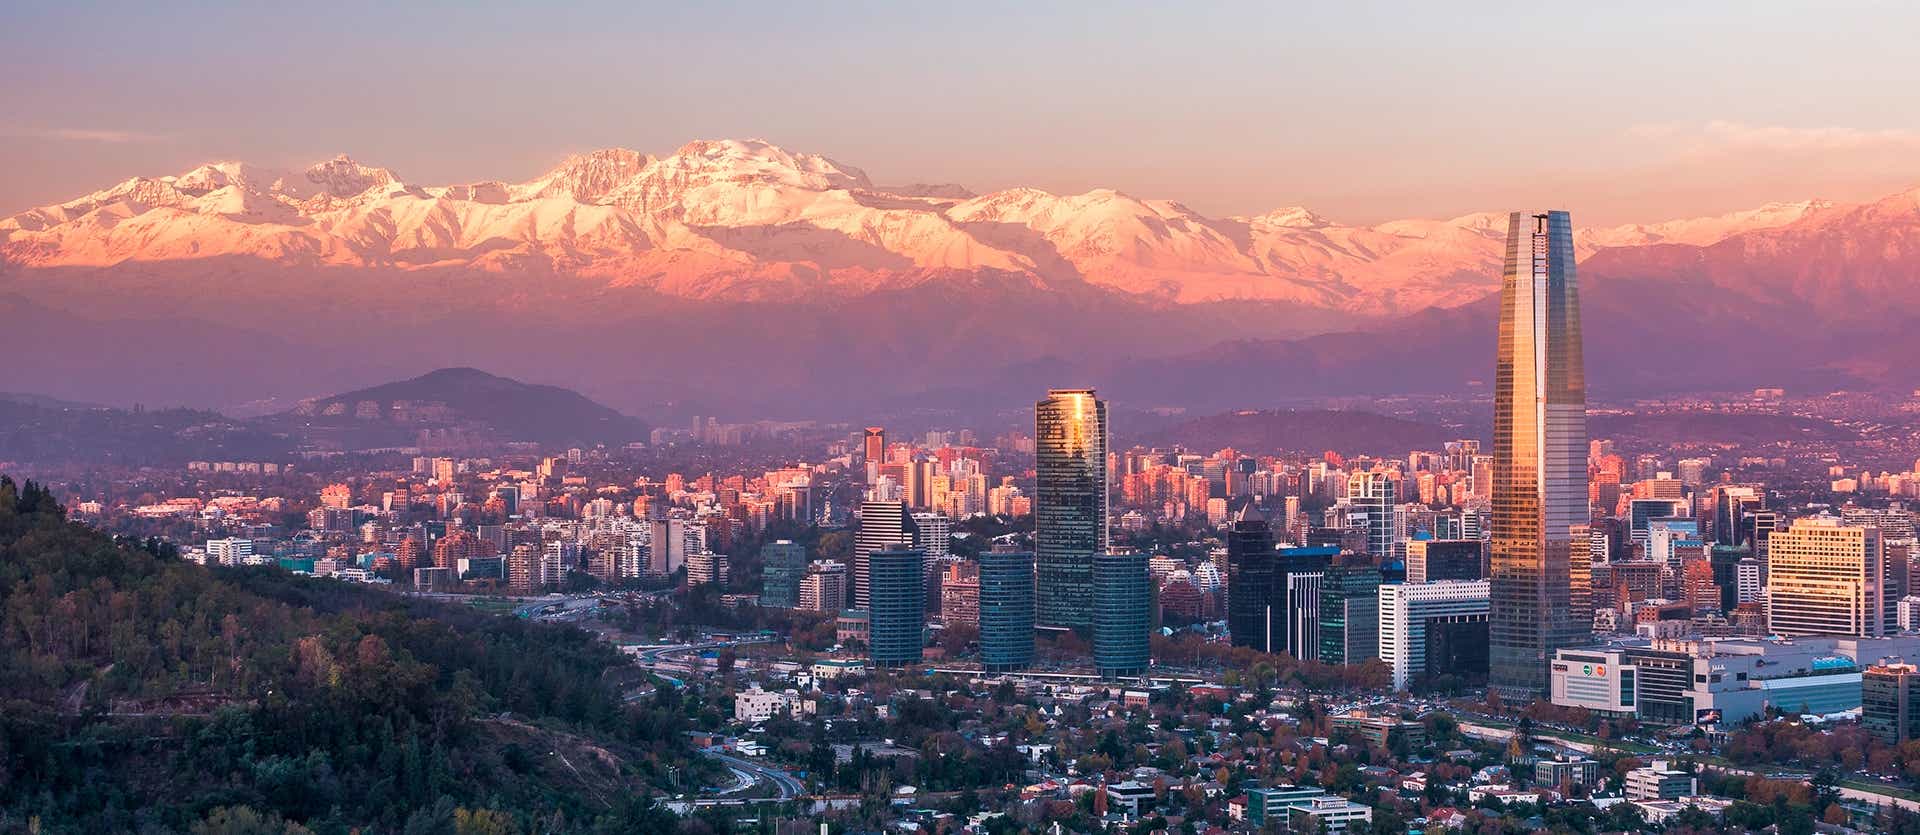 Sunset over Santiago <span class="iconos separador"></span> Chile